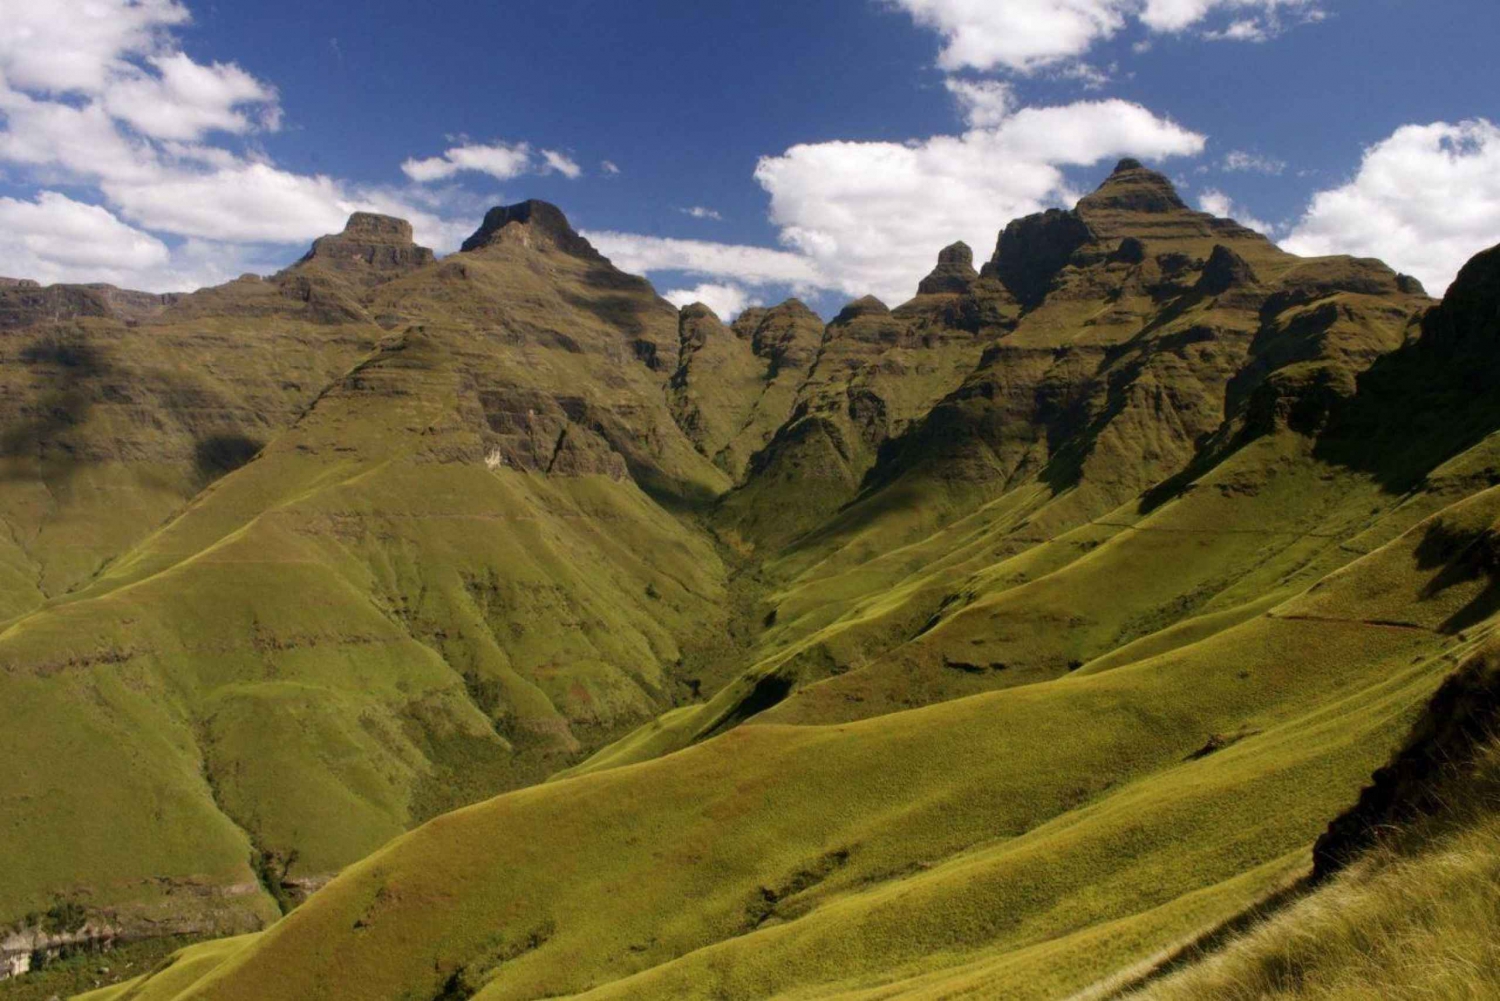 2 Day Tour Tala Ga Reserve & Drakensberg Mountains fr Durban